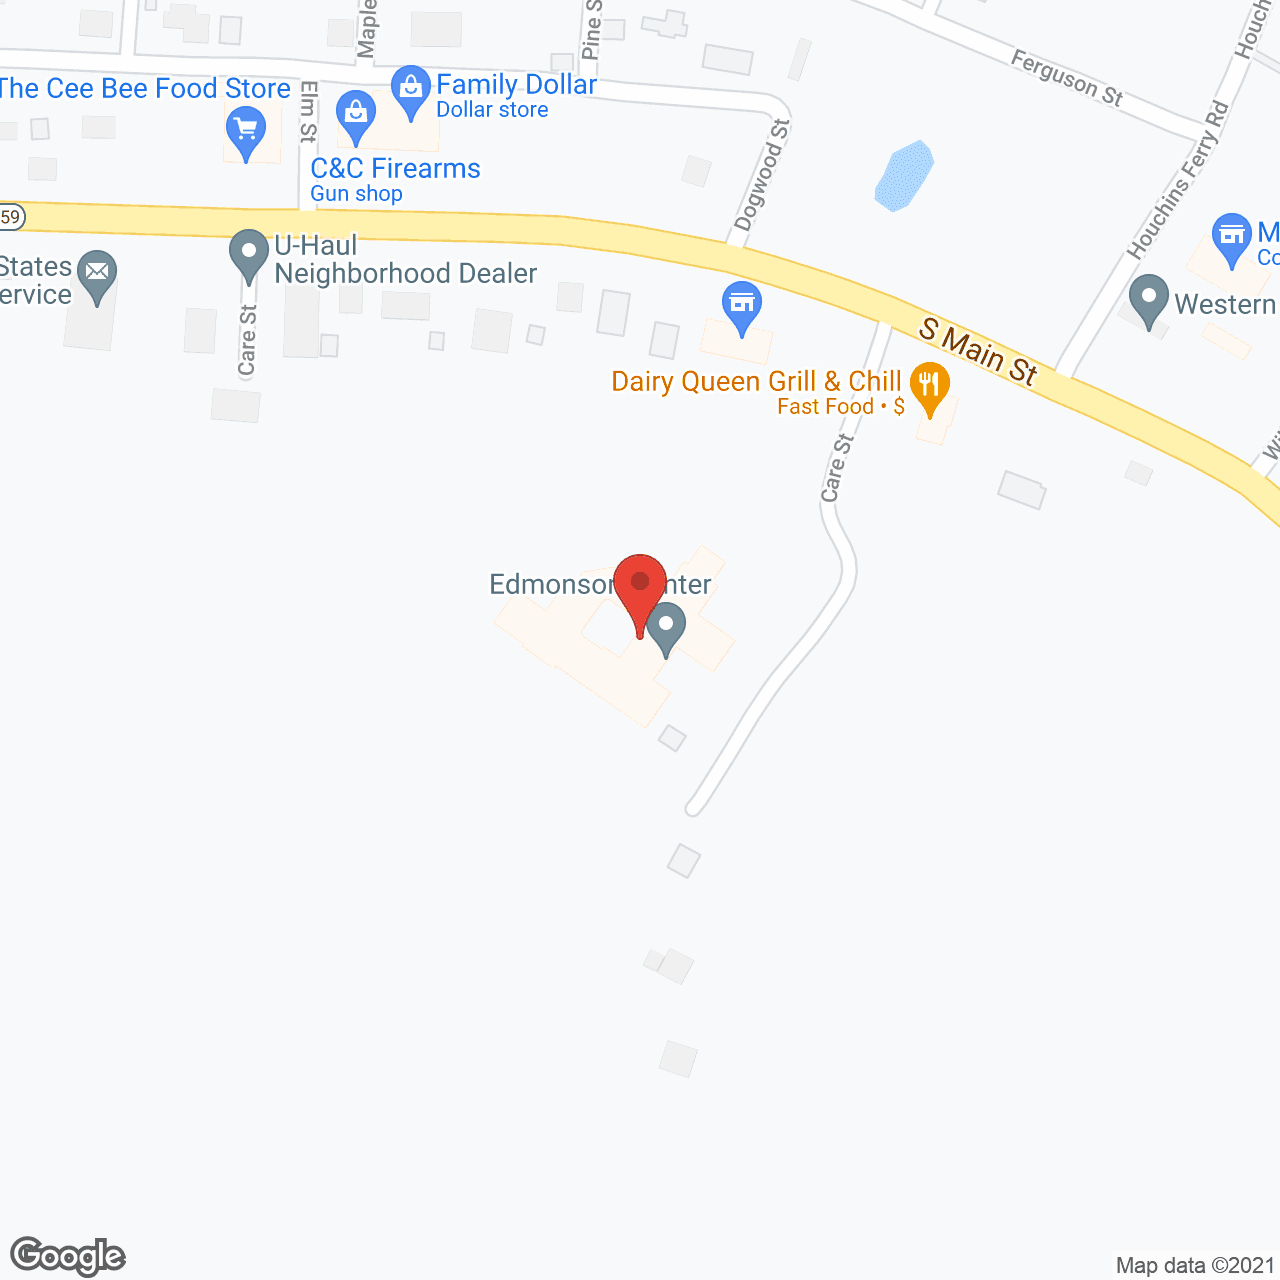 Edmonson Center in google map